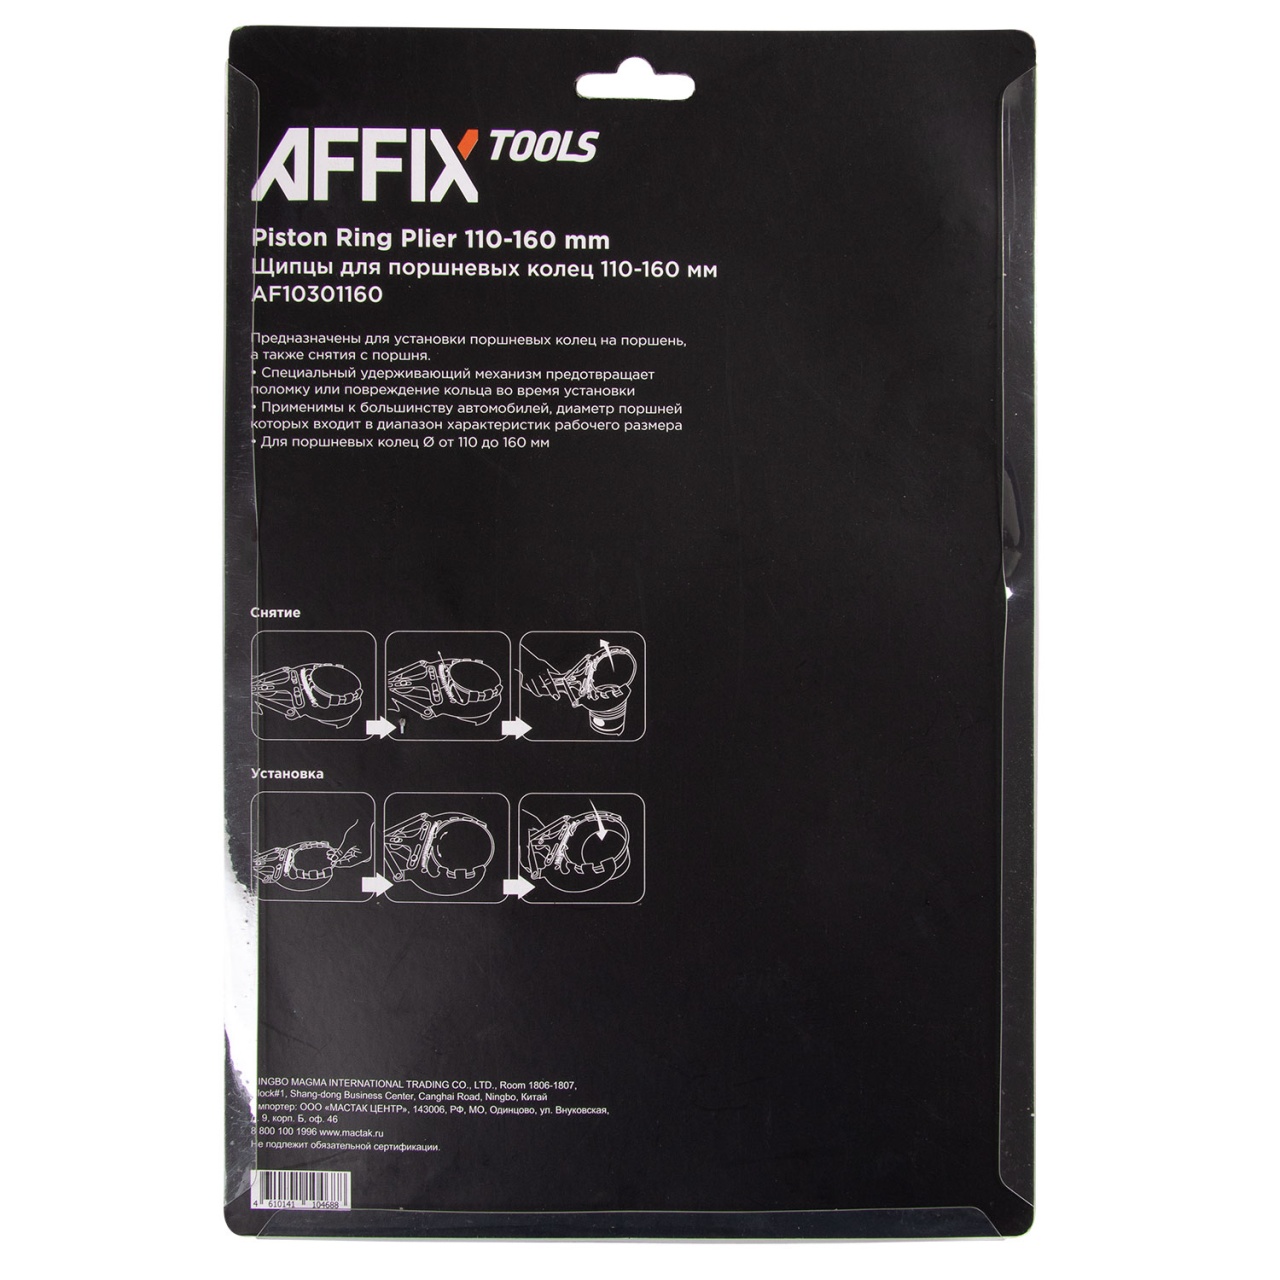 Щипцы для поршневых колец, 110-160 мм AFFIX AF10301160